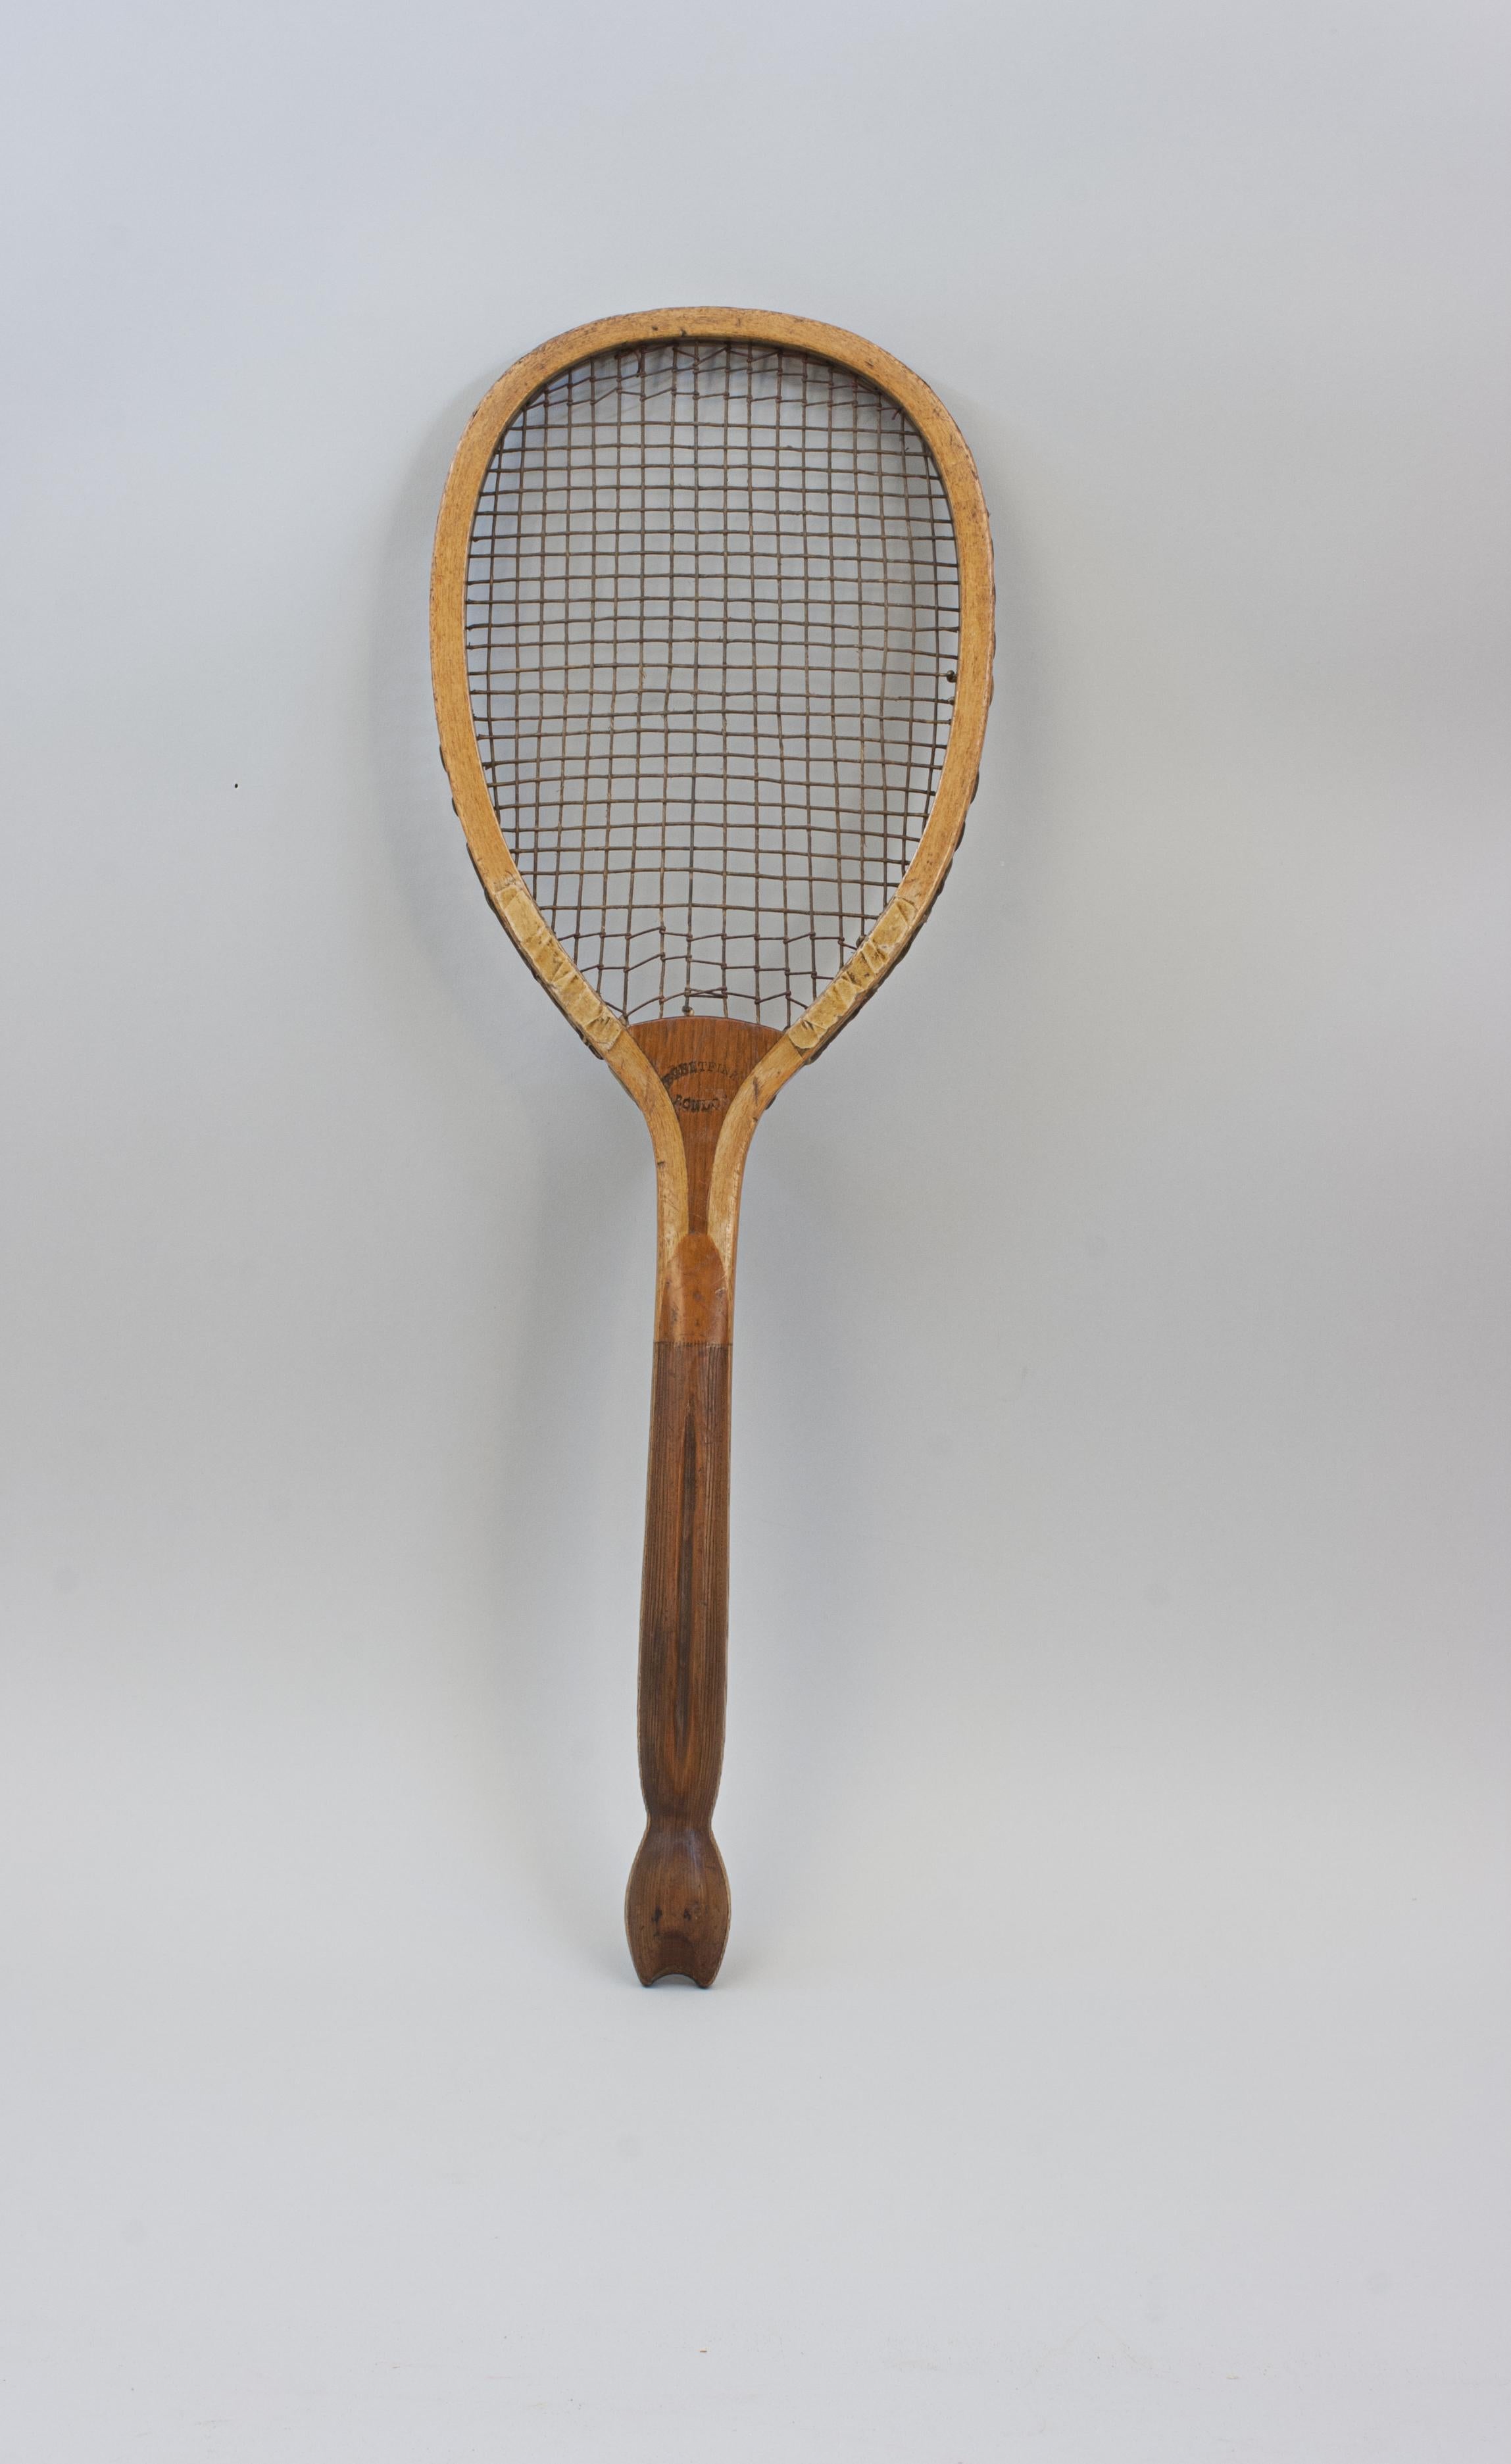 Raquette de tennis en bois Prosser & Sons Fishtail.
Une raquette de lawn tennis par AT&T. Prosser & Sons avec un beau cadre en frêne et un coin convexe en noyer. La cale porte le nom du fabricant en lettres dorées 